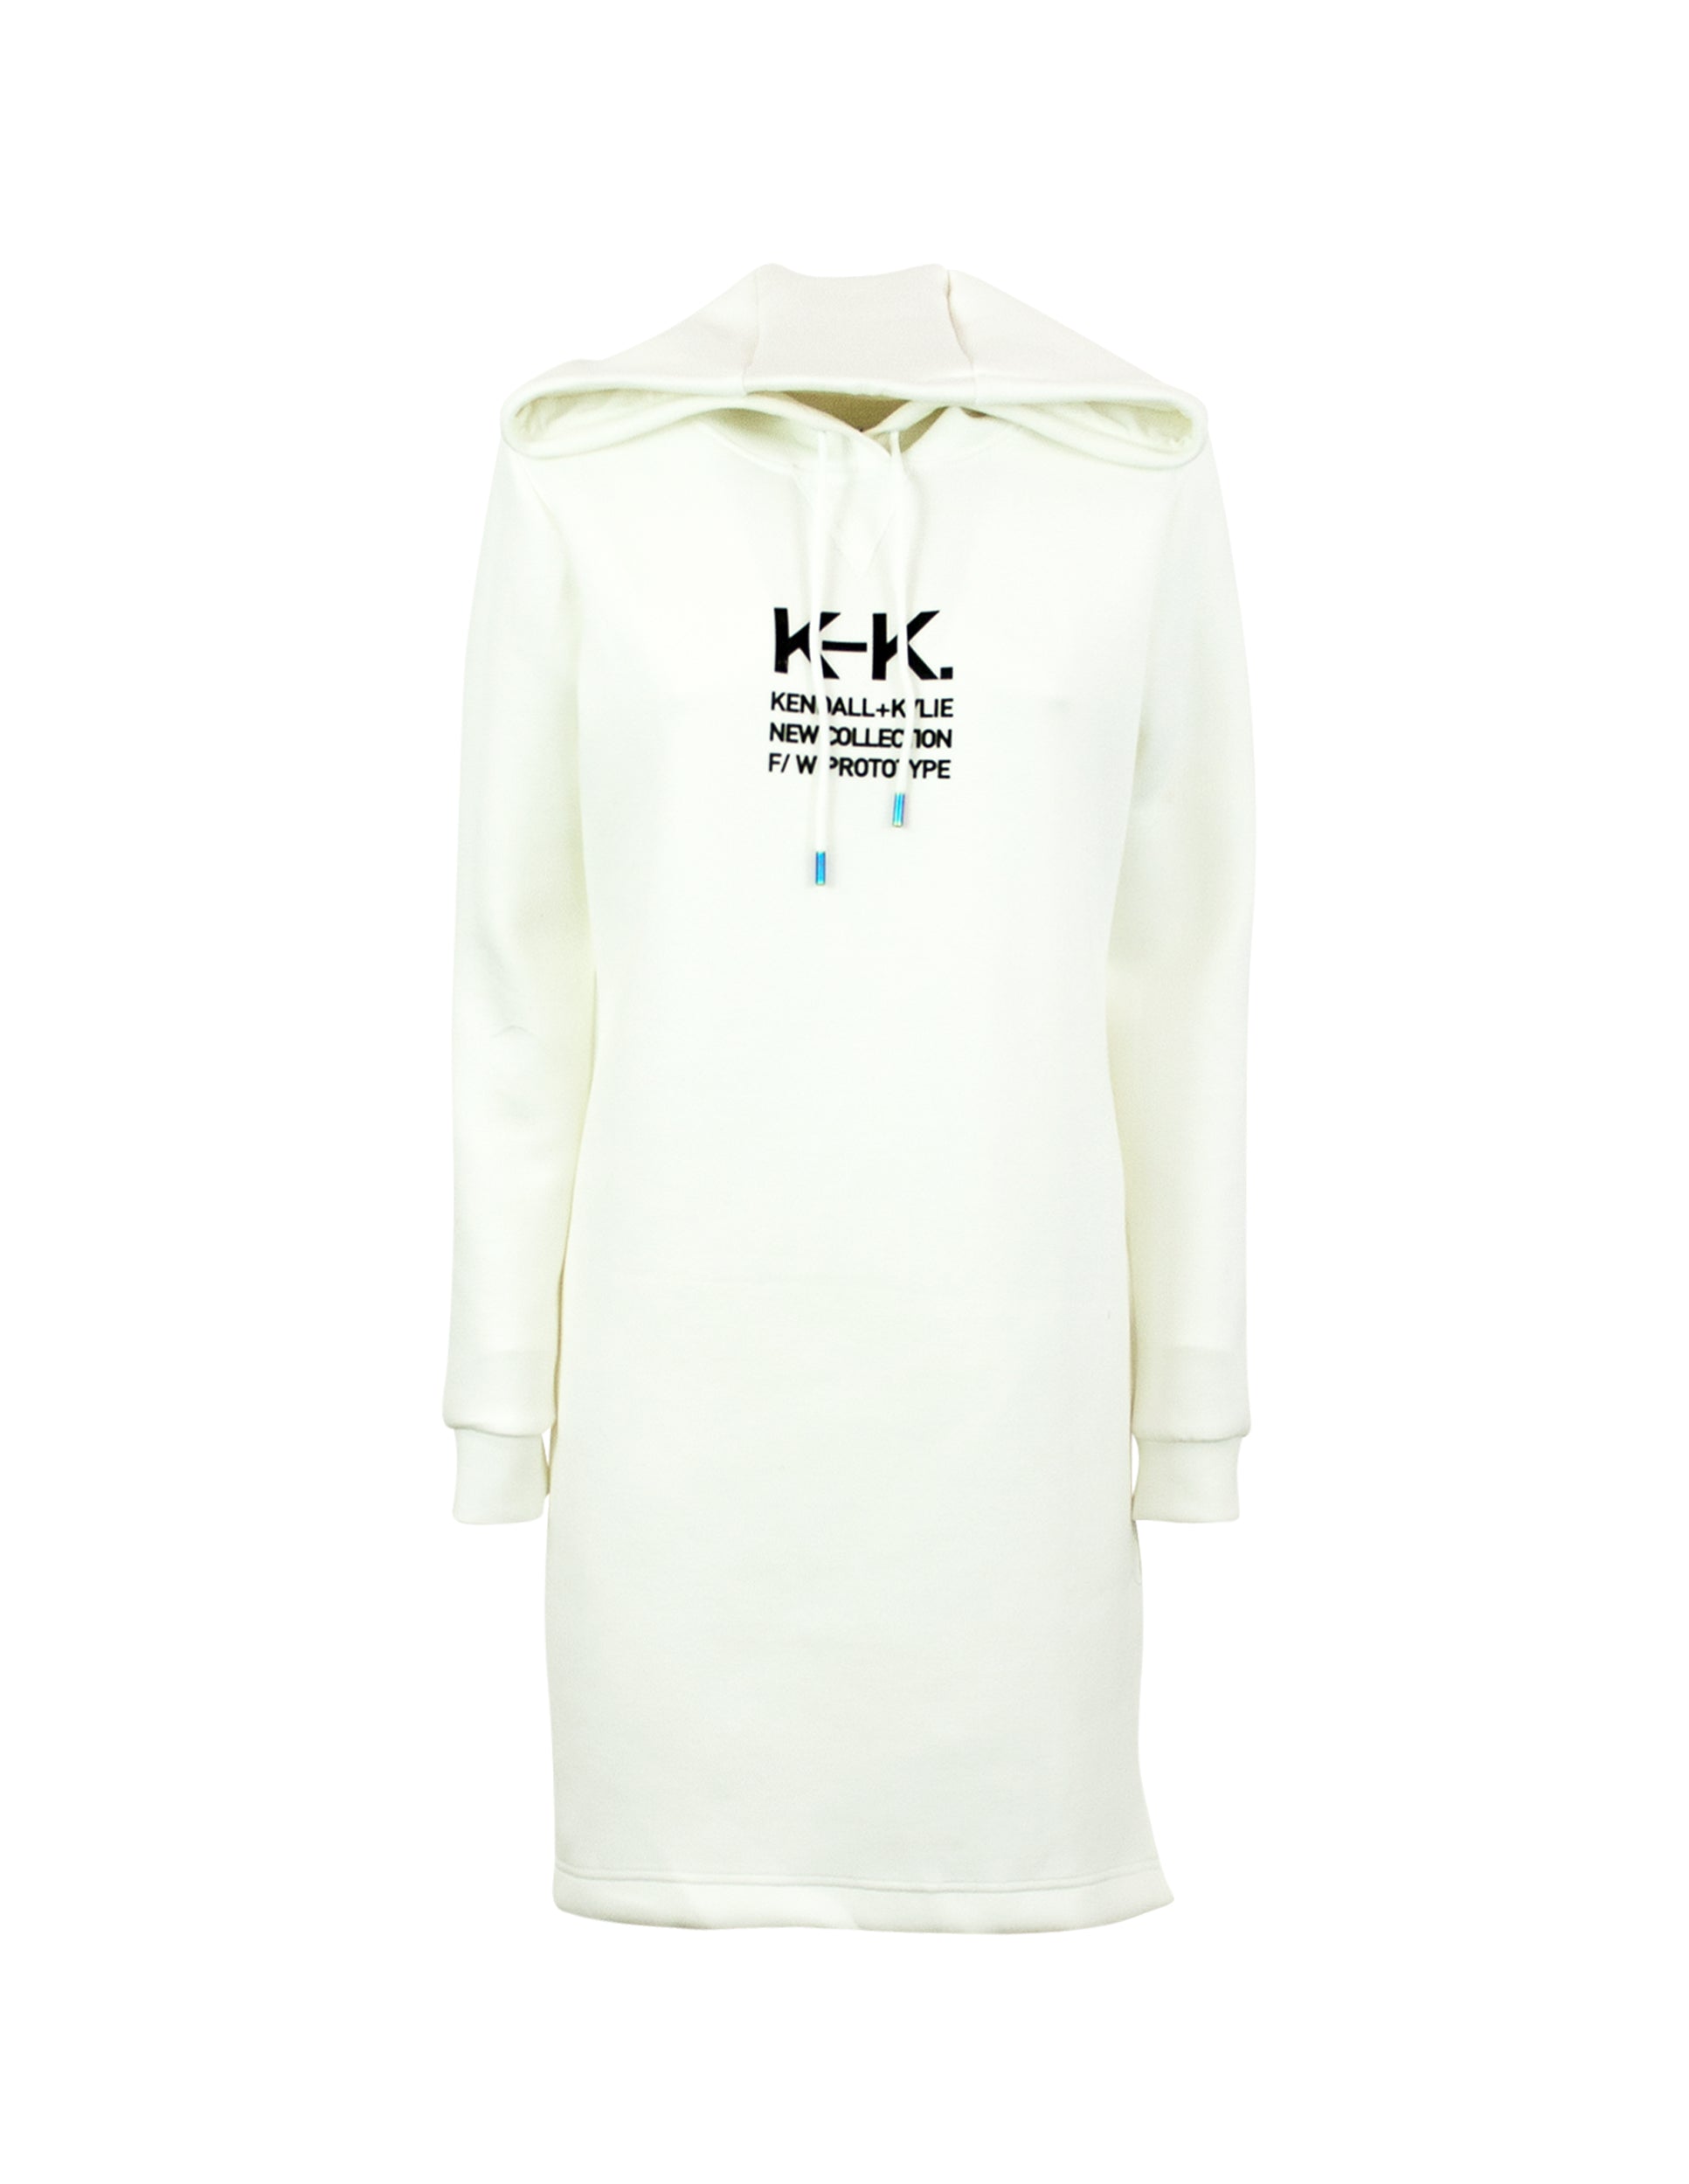 KENDALL UND KYLIE
Langes Sweatshirt mit Seitenschlitz Kendall + Kylie